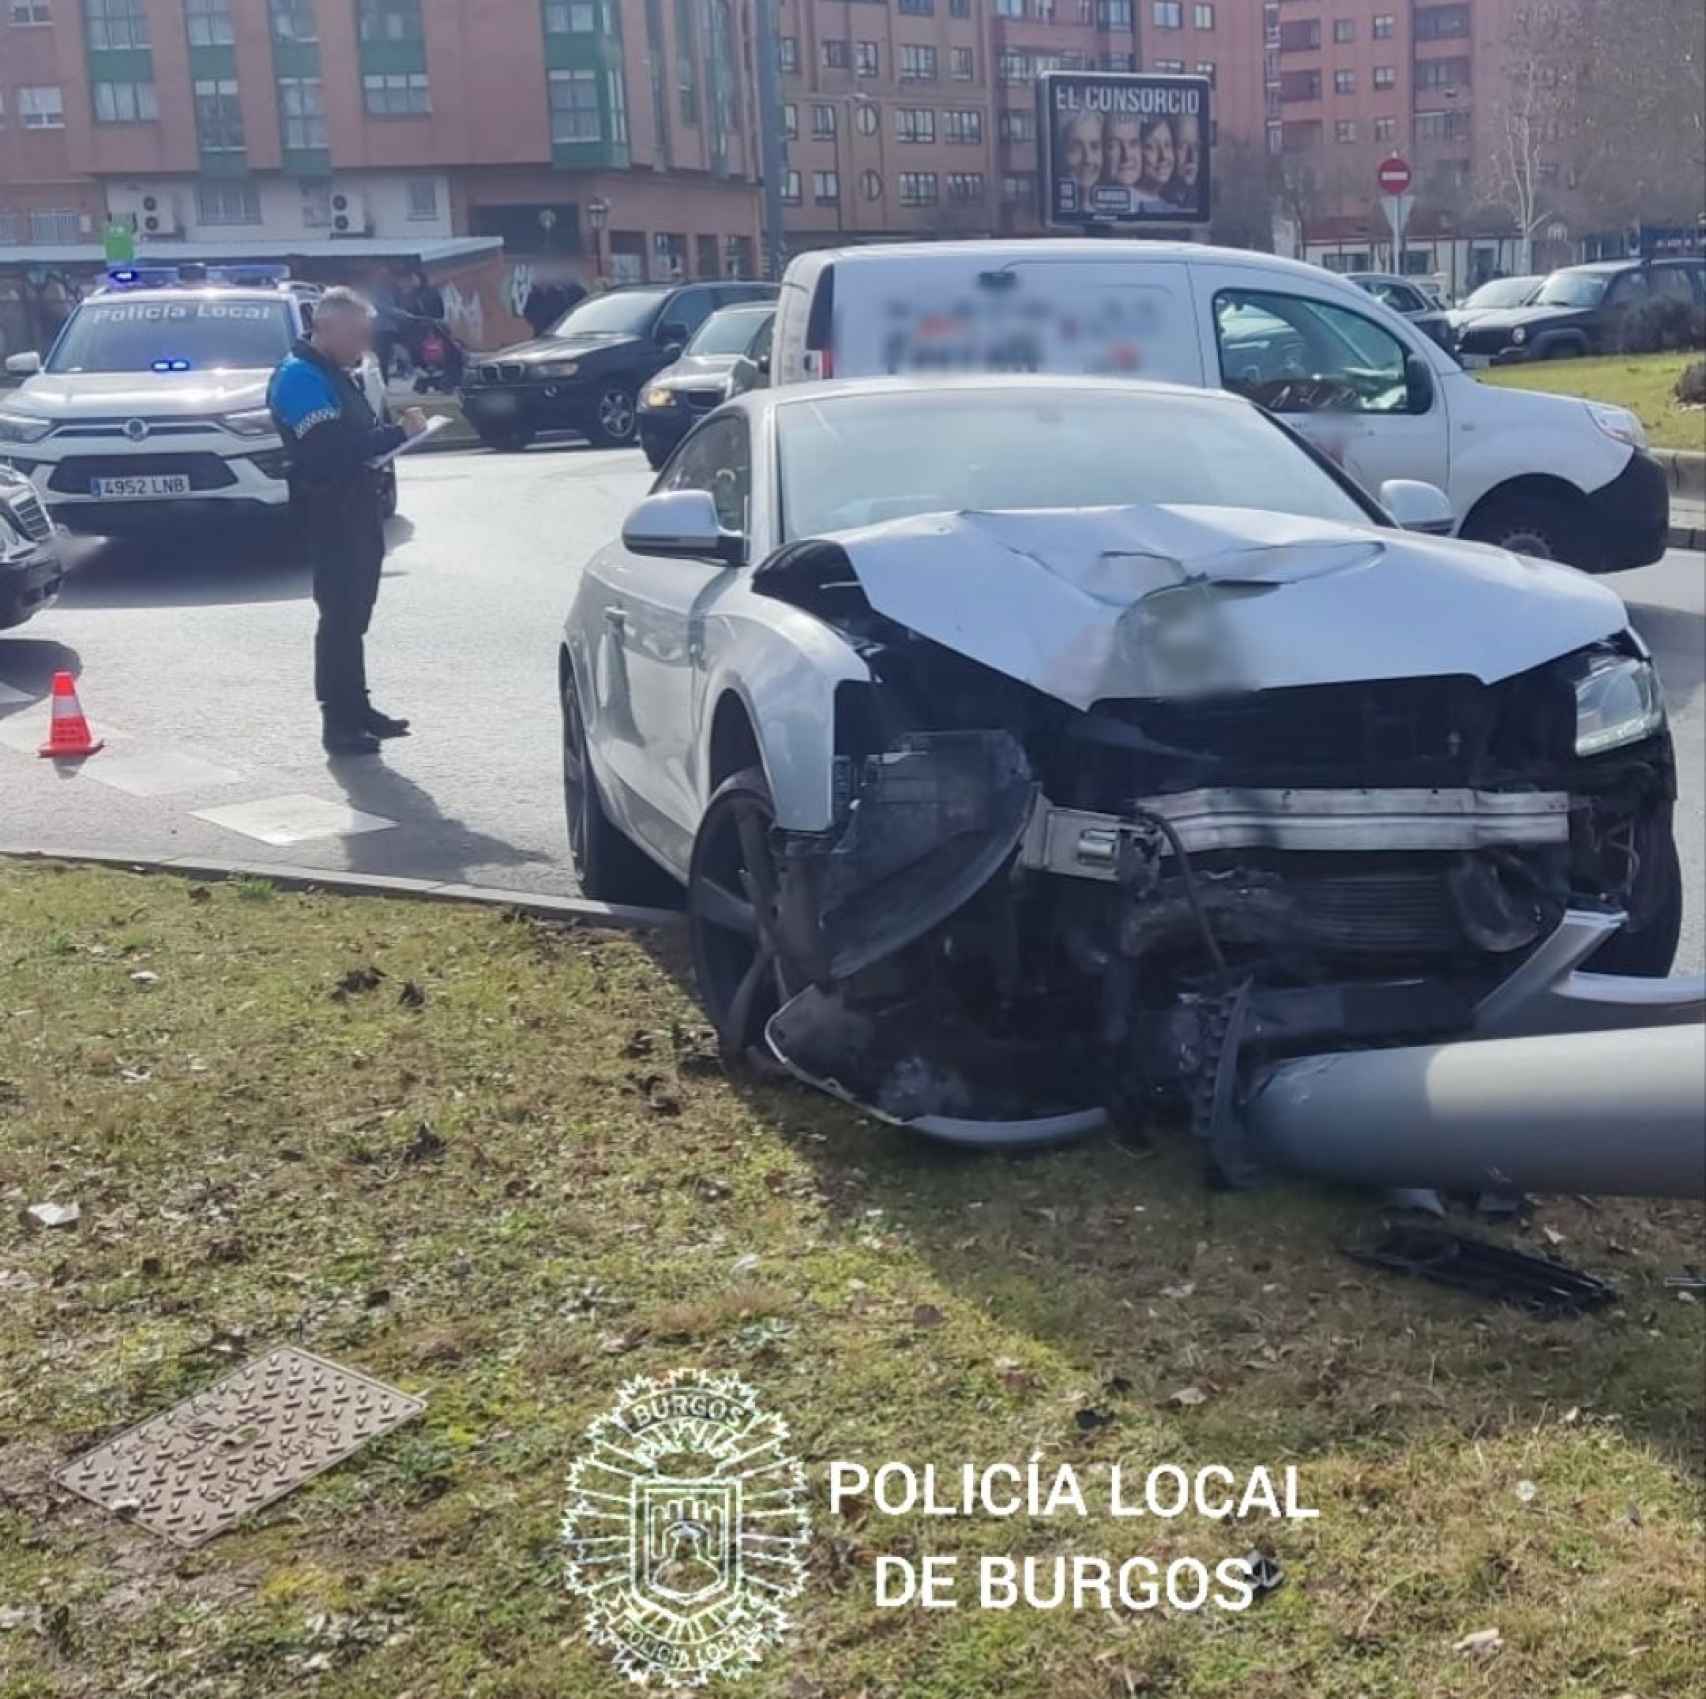 Estado del coche que ha derribado una farola en Burgos